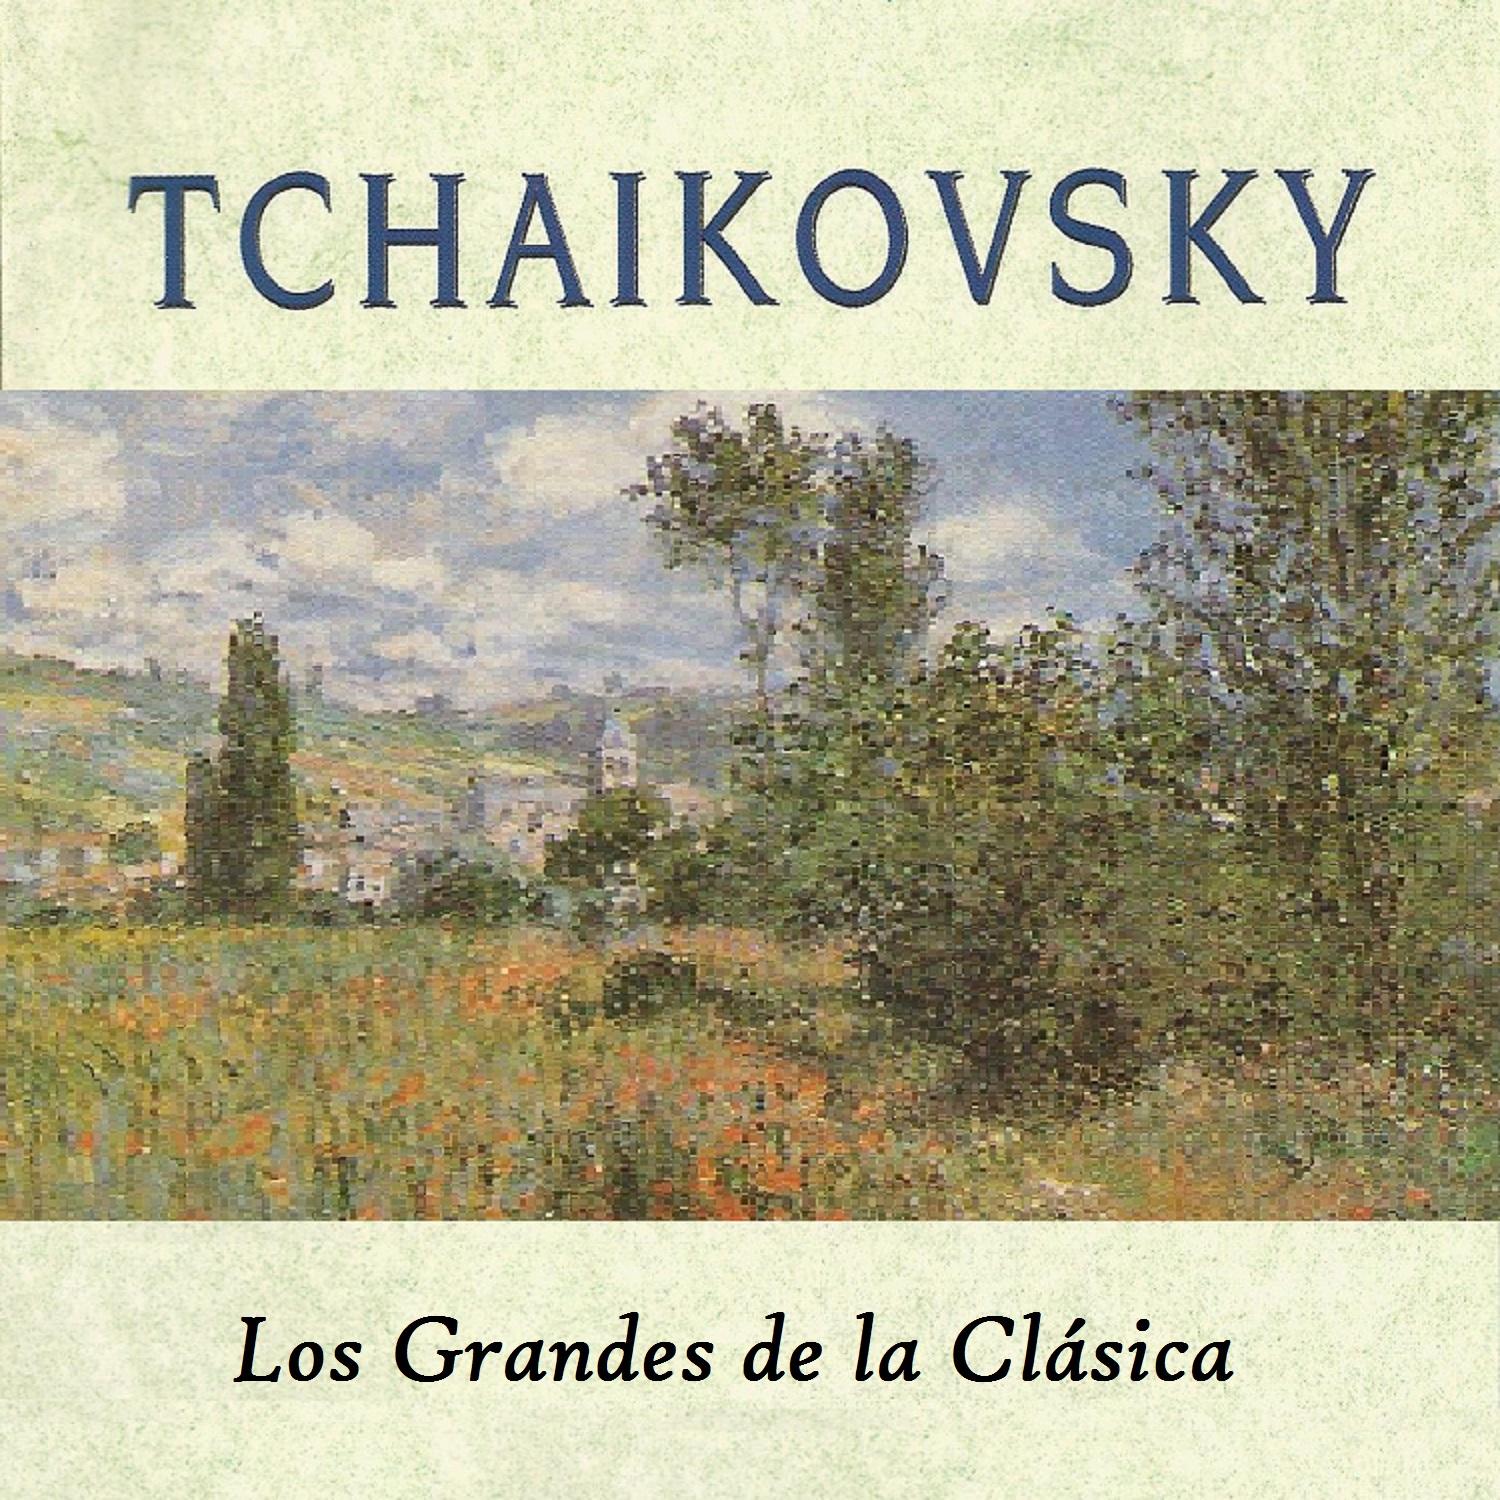 Tchaikovsky, Los Grandes de la Cla sica